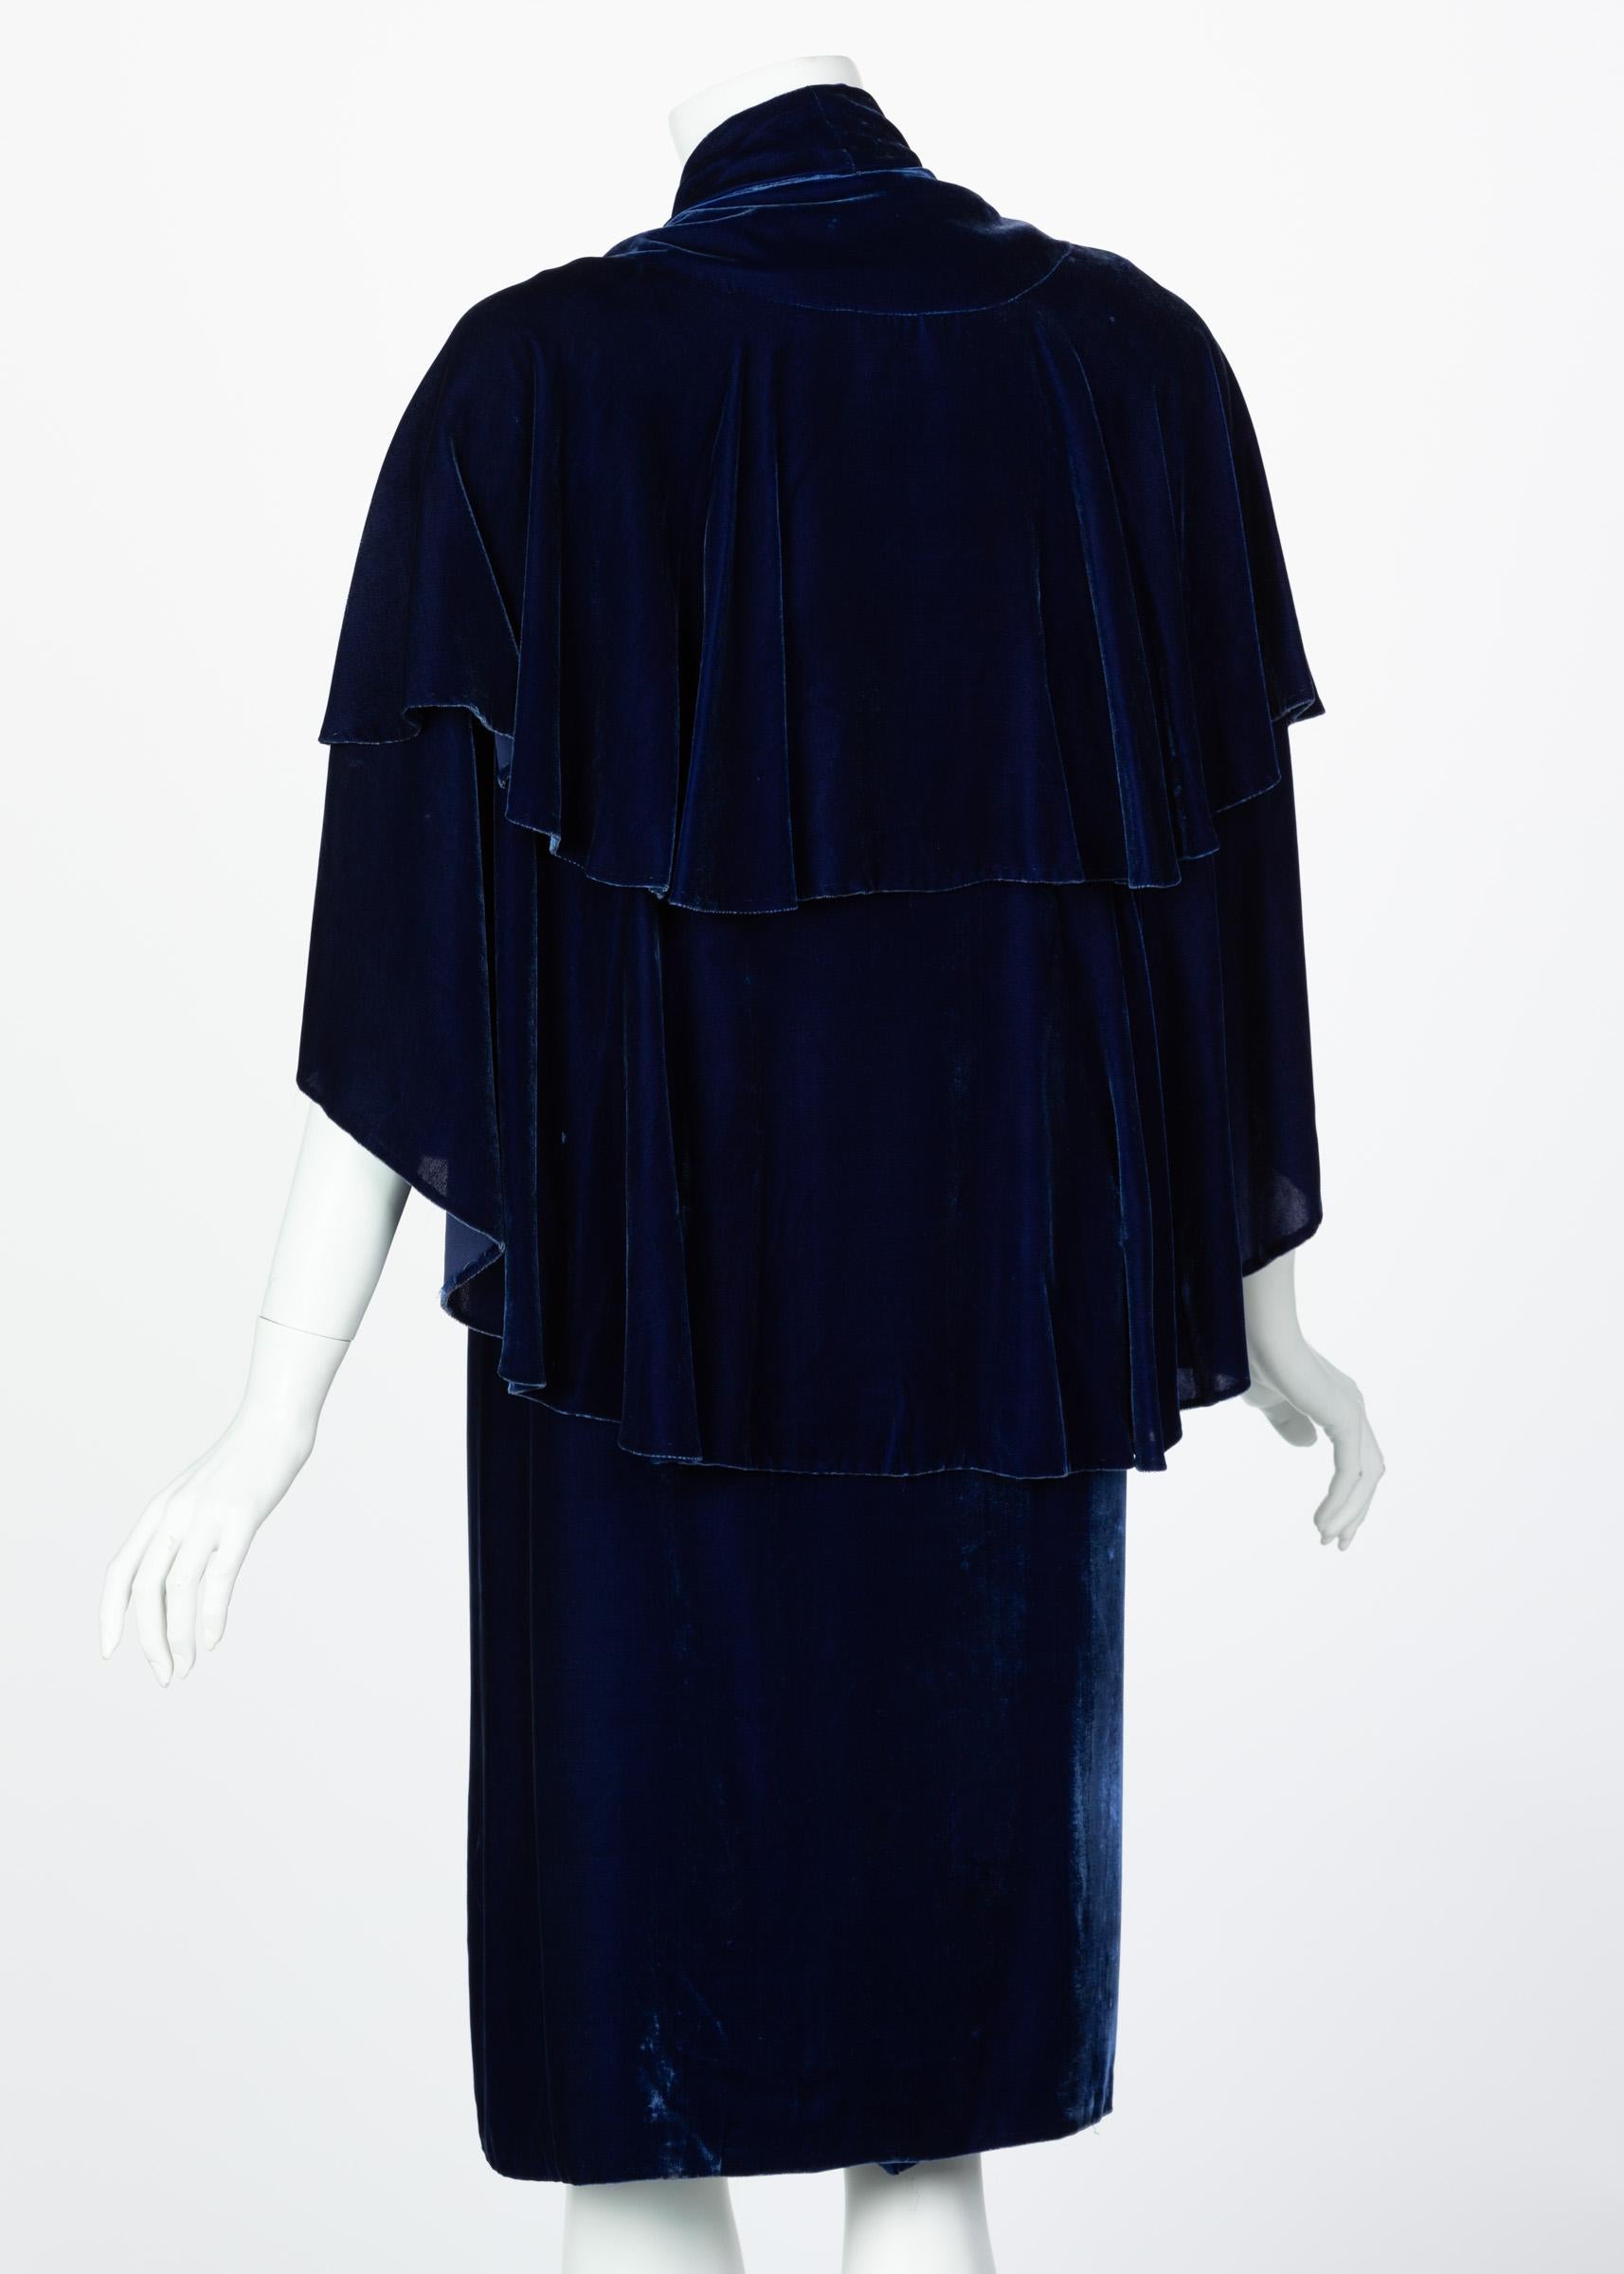 I Magnin & Co. Blue Silk velvet Evening Cape Coat, 1930s For Sale 1